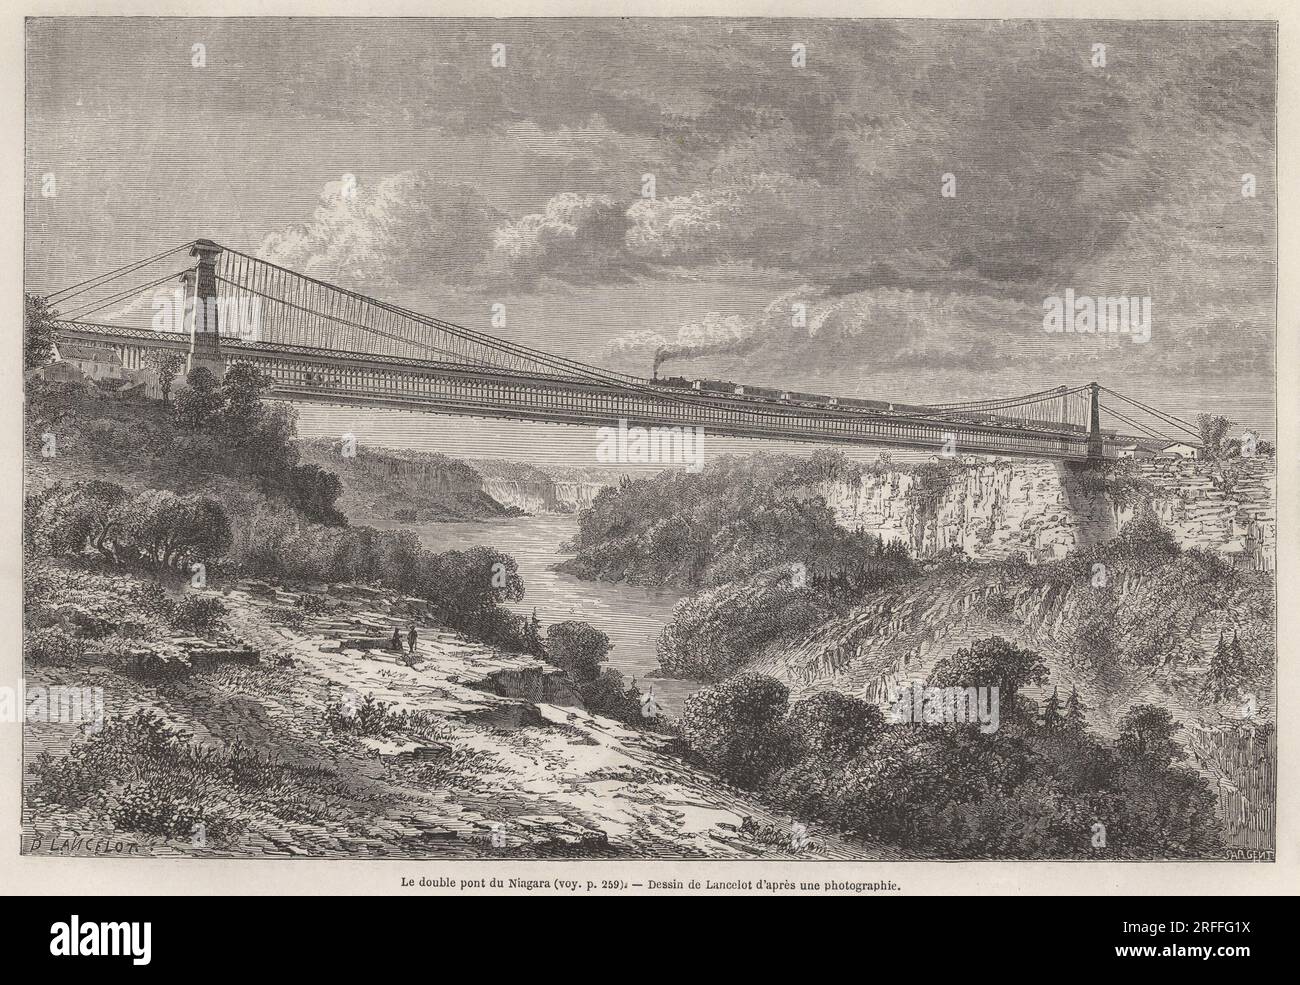 Le double pont du Niagara, dessin de Lancelot, pour Illustrator les voyages dans l'Amerique septentrionale en 1854-1855, de L. Deville. Gravure in „Le Tour du Monde“ 1861. Stockfoto